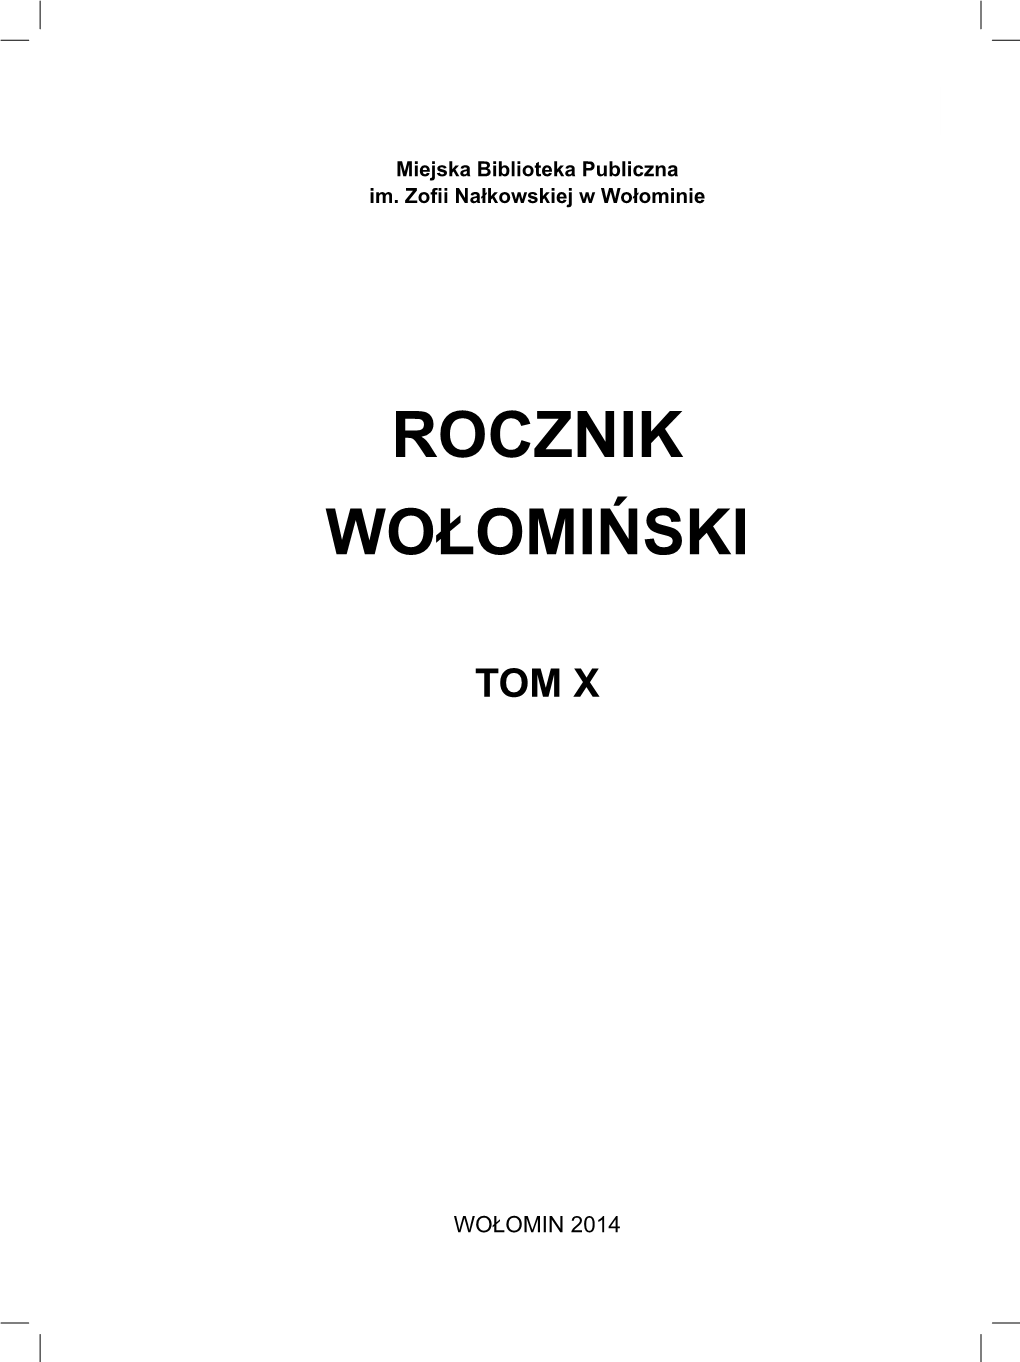 Rocznik Wołomiński – Tom X